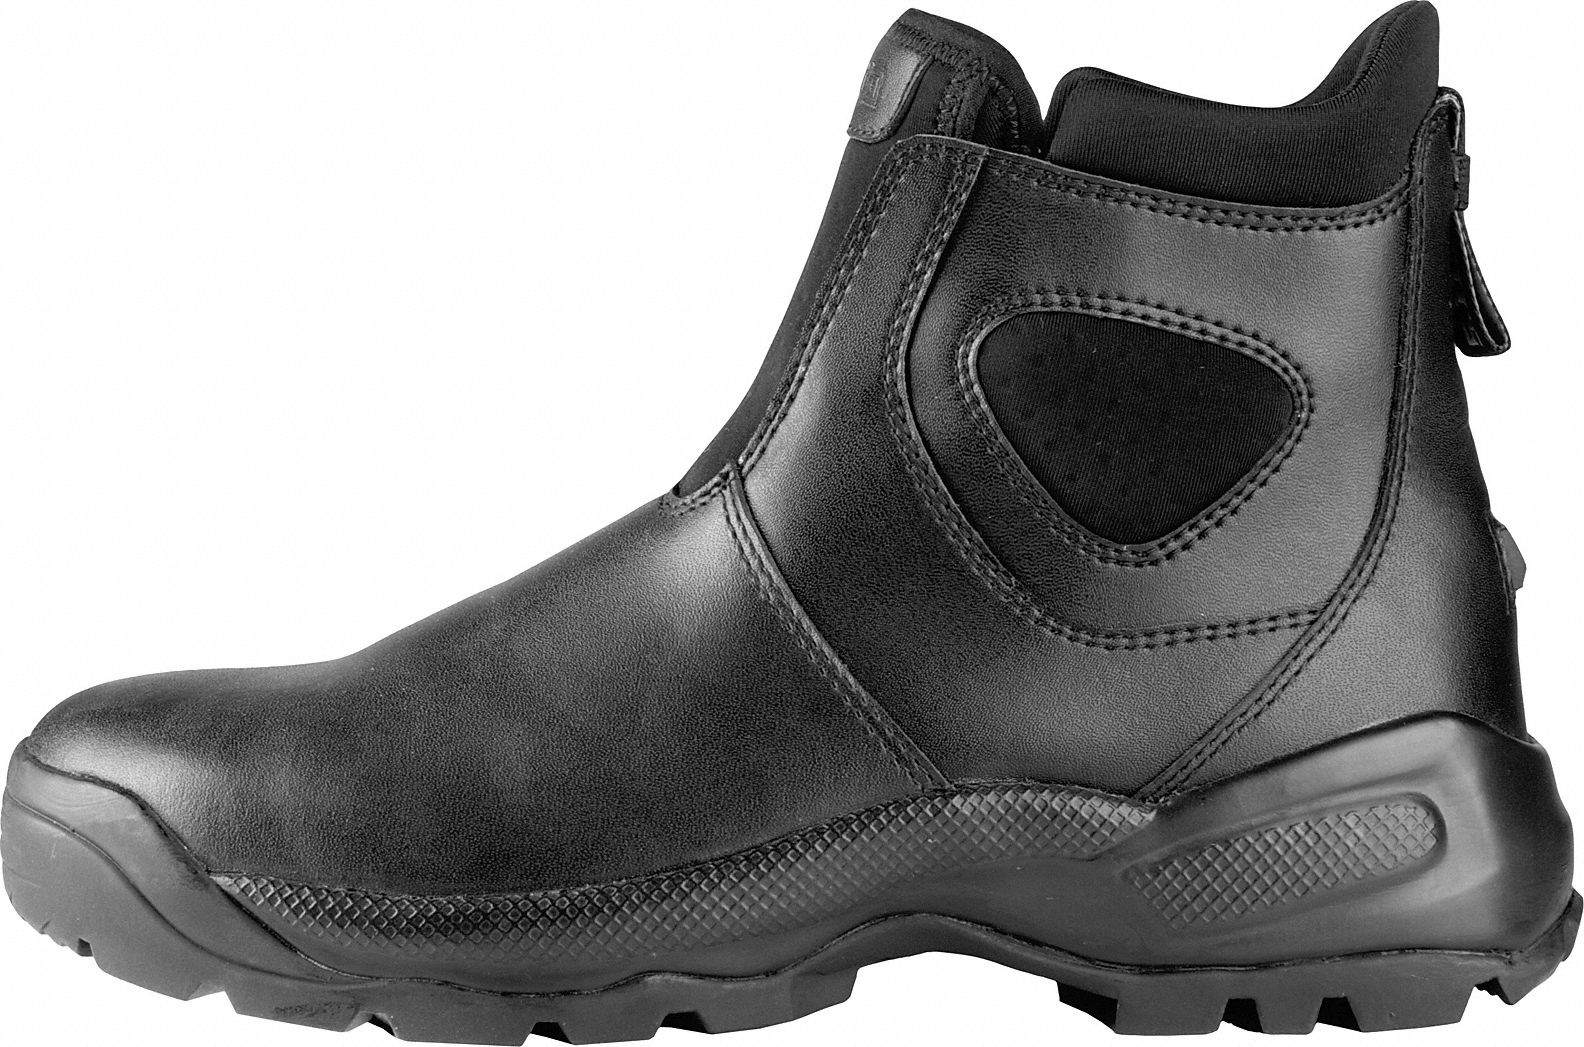 5.11 Tactical 12033 Boot Composite 10r Slip on Black PR 21v206 for sale online 